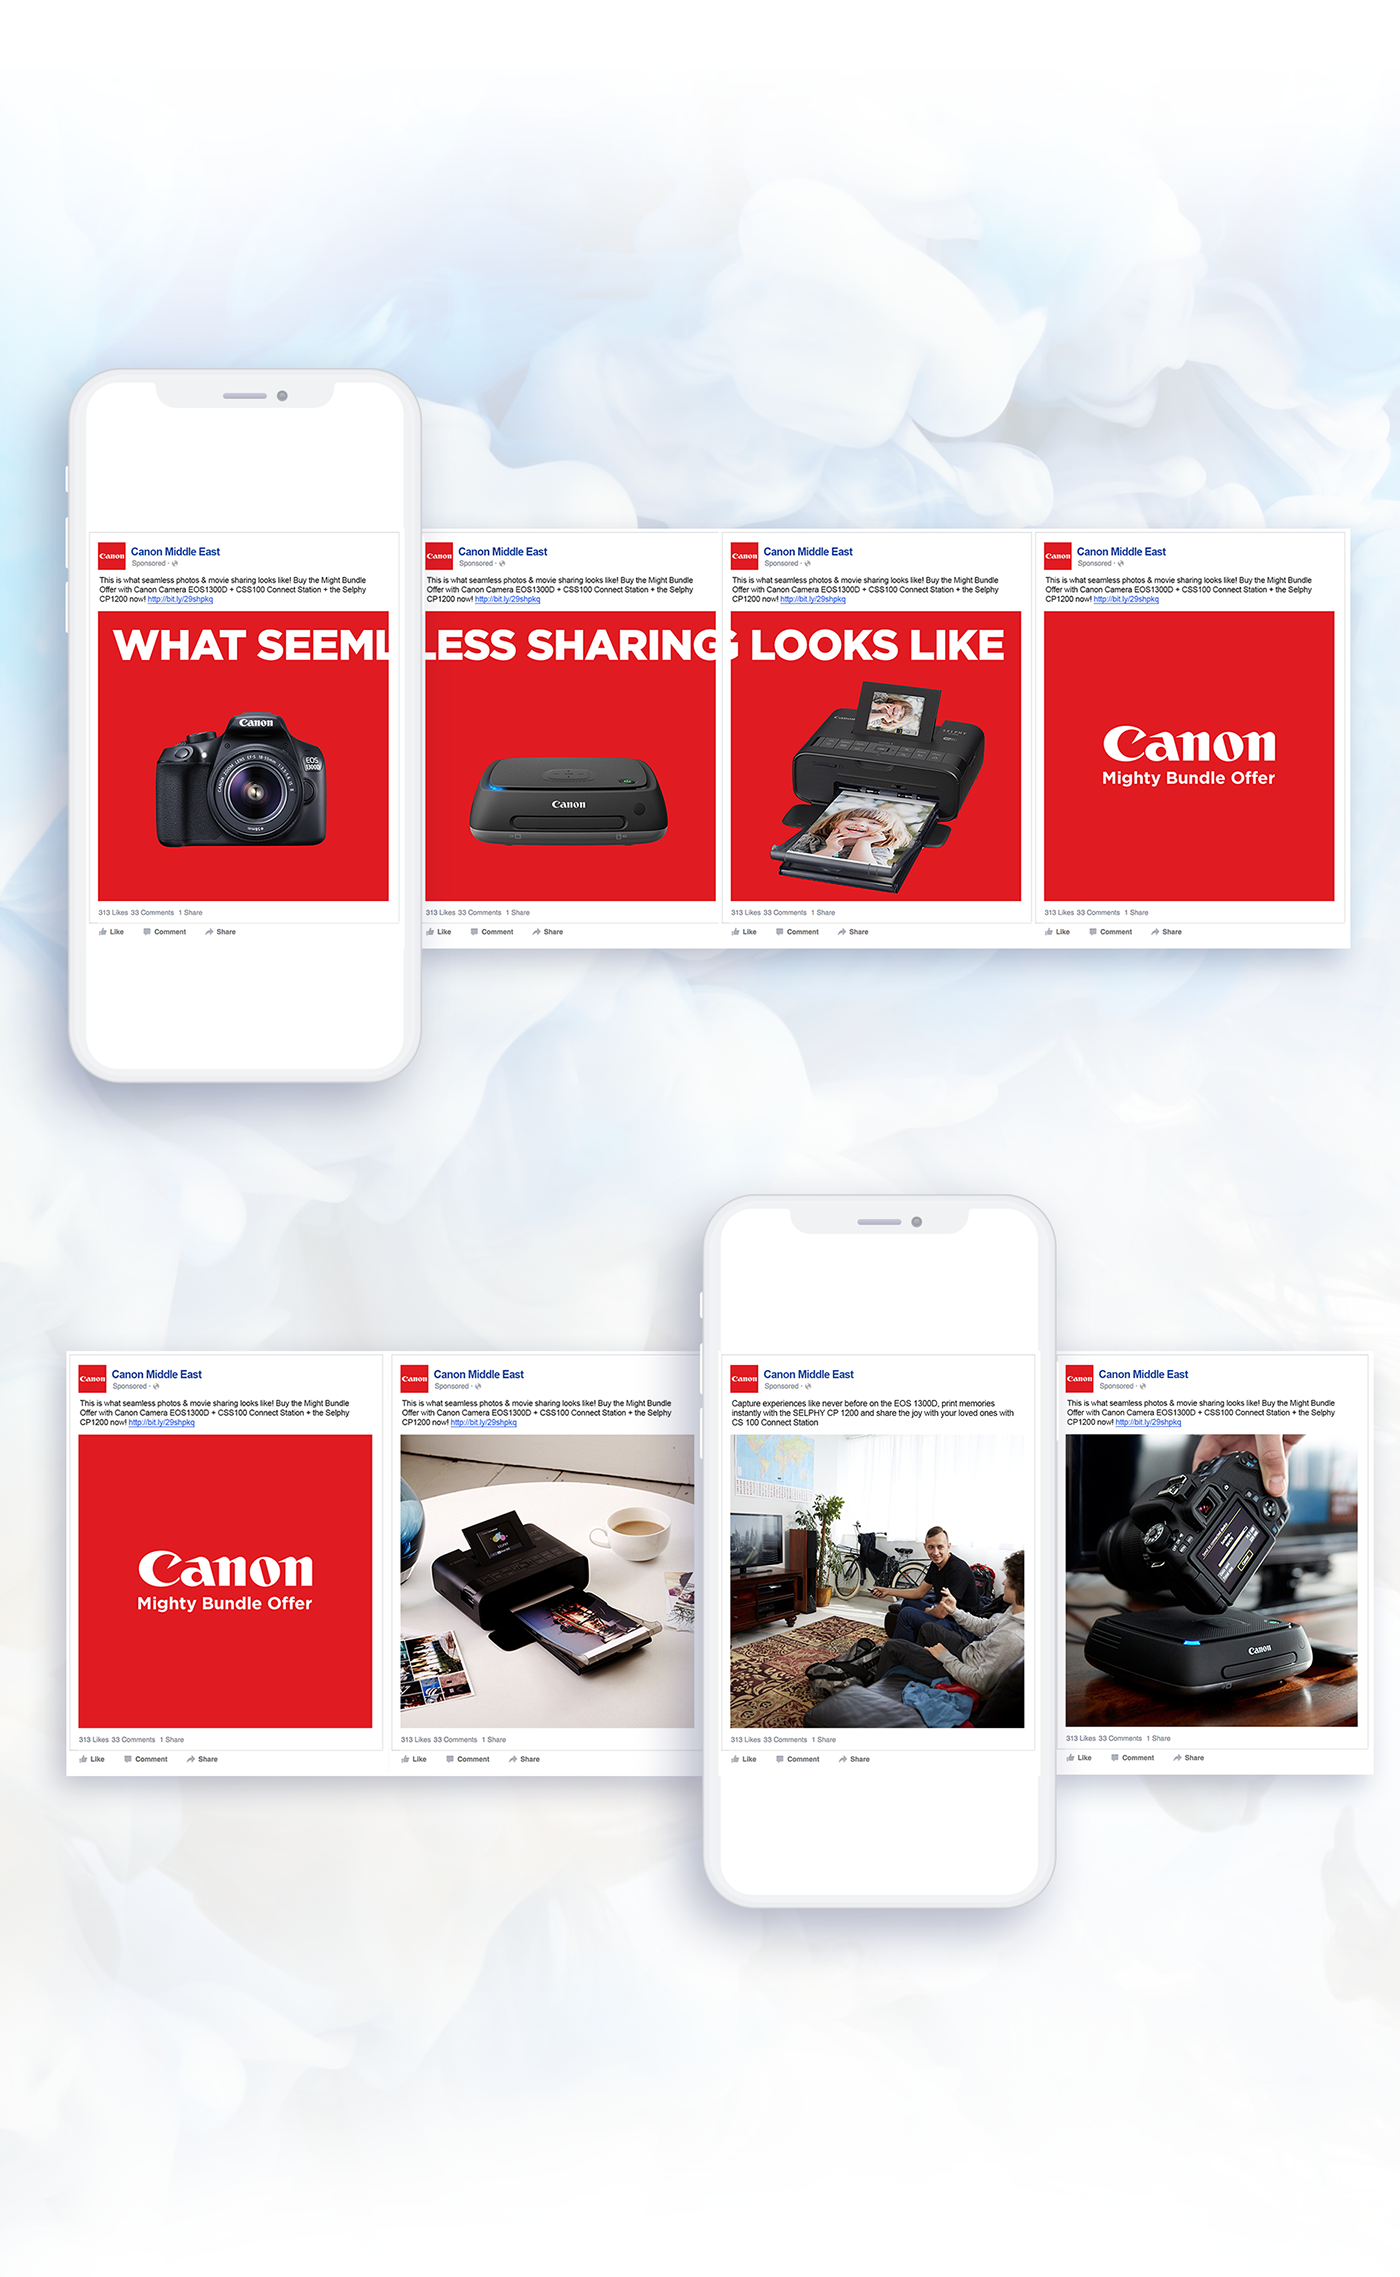 social media digital design Advertising  canon camera Canon Middle East Canon and Nikon Photography  Creative Direction  Social Media Designs Agency Creative